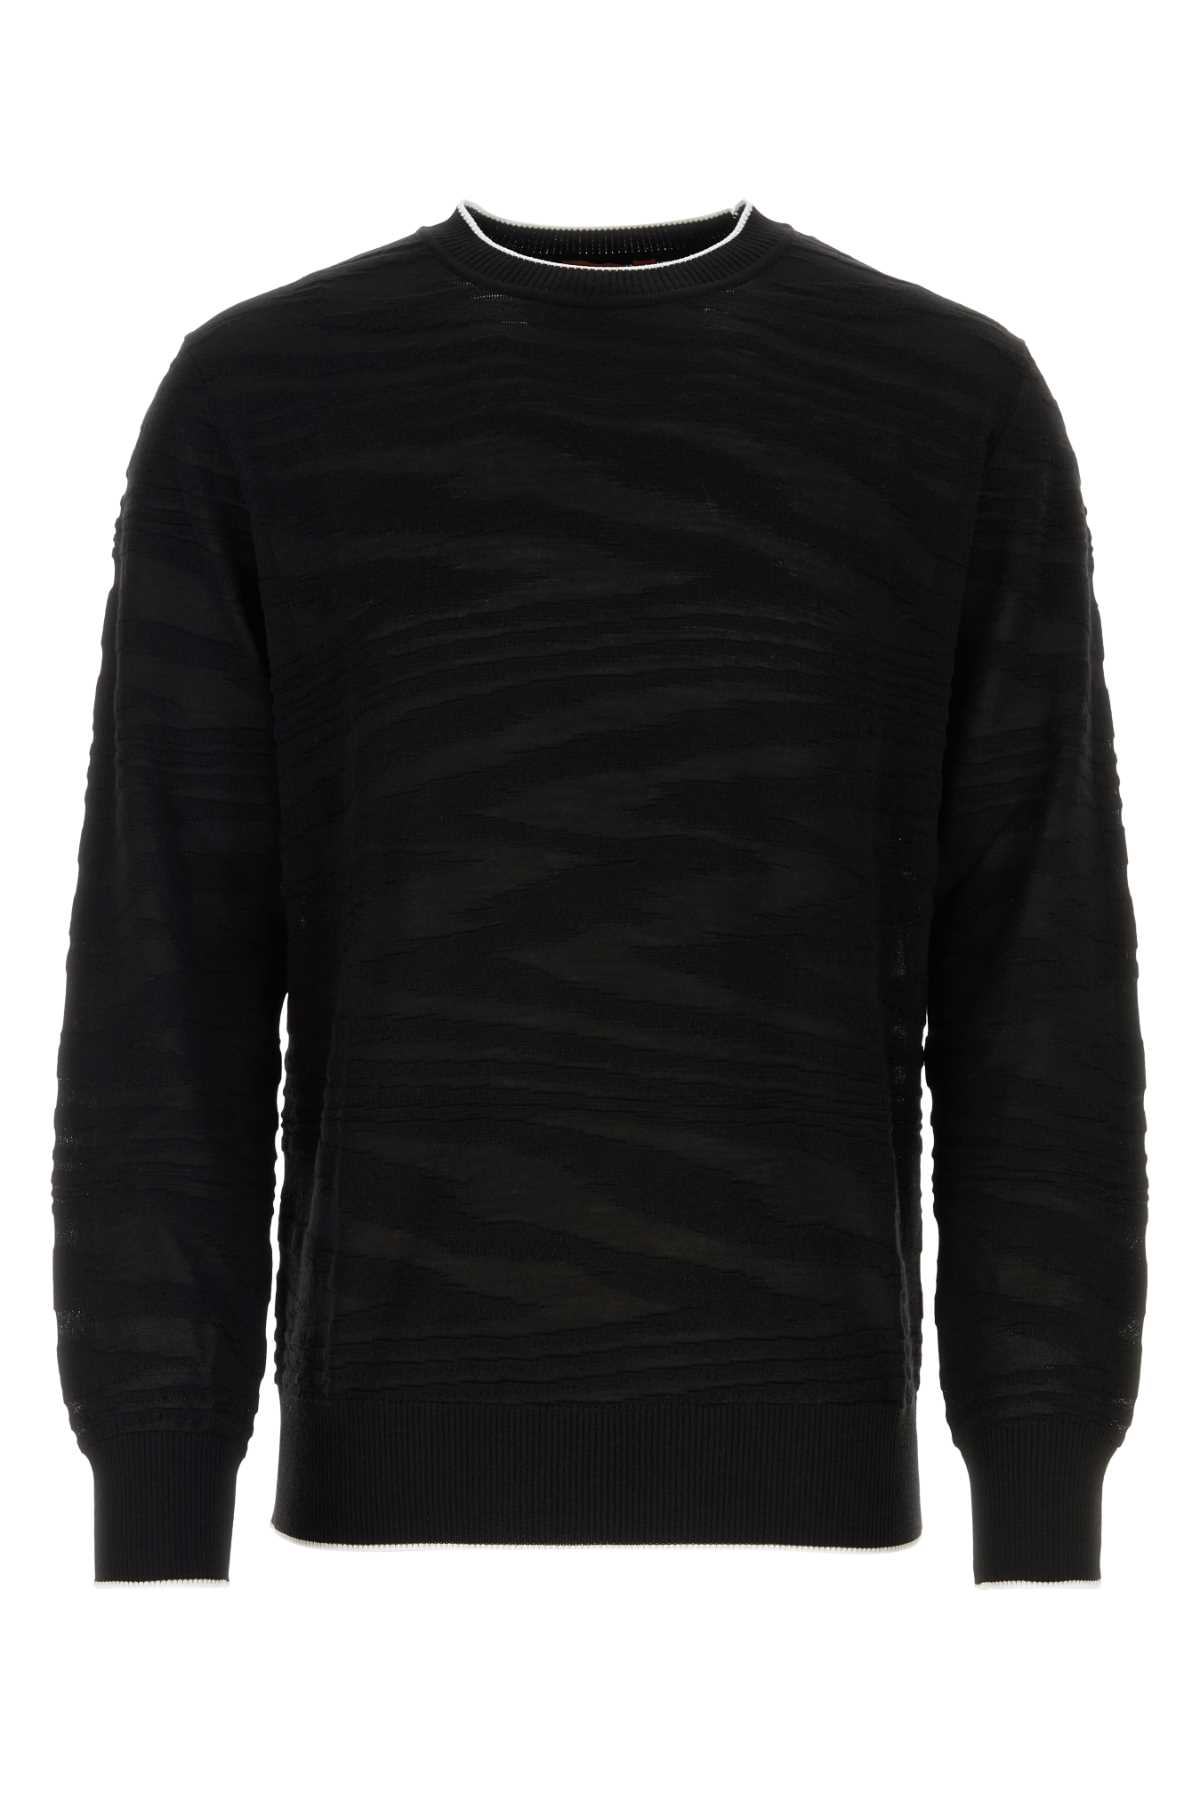 Missoni Black Wool Blend Sweater